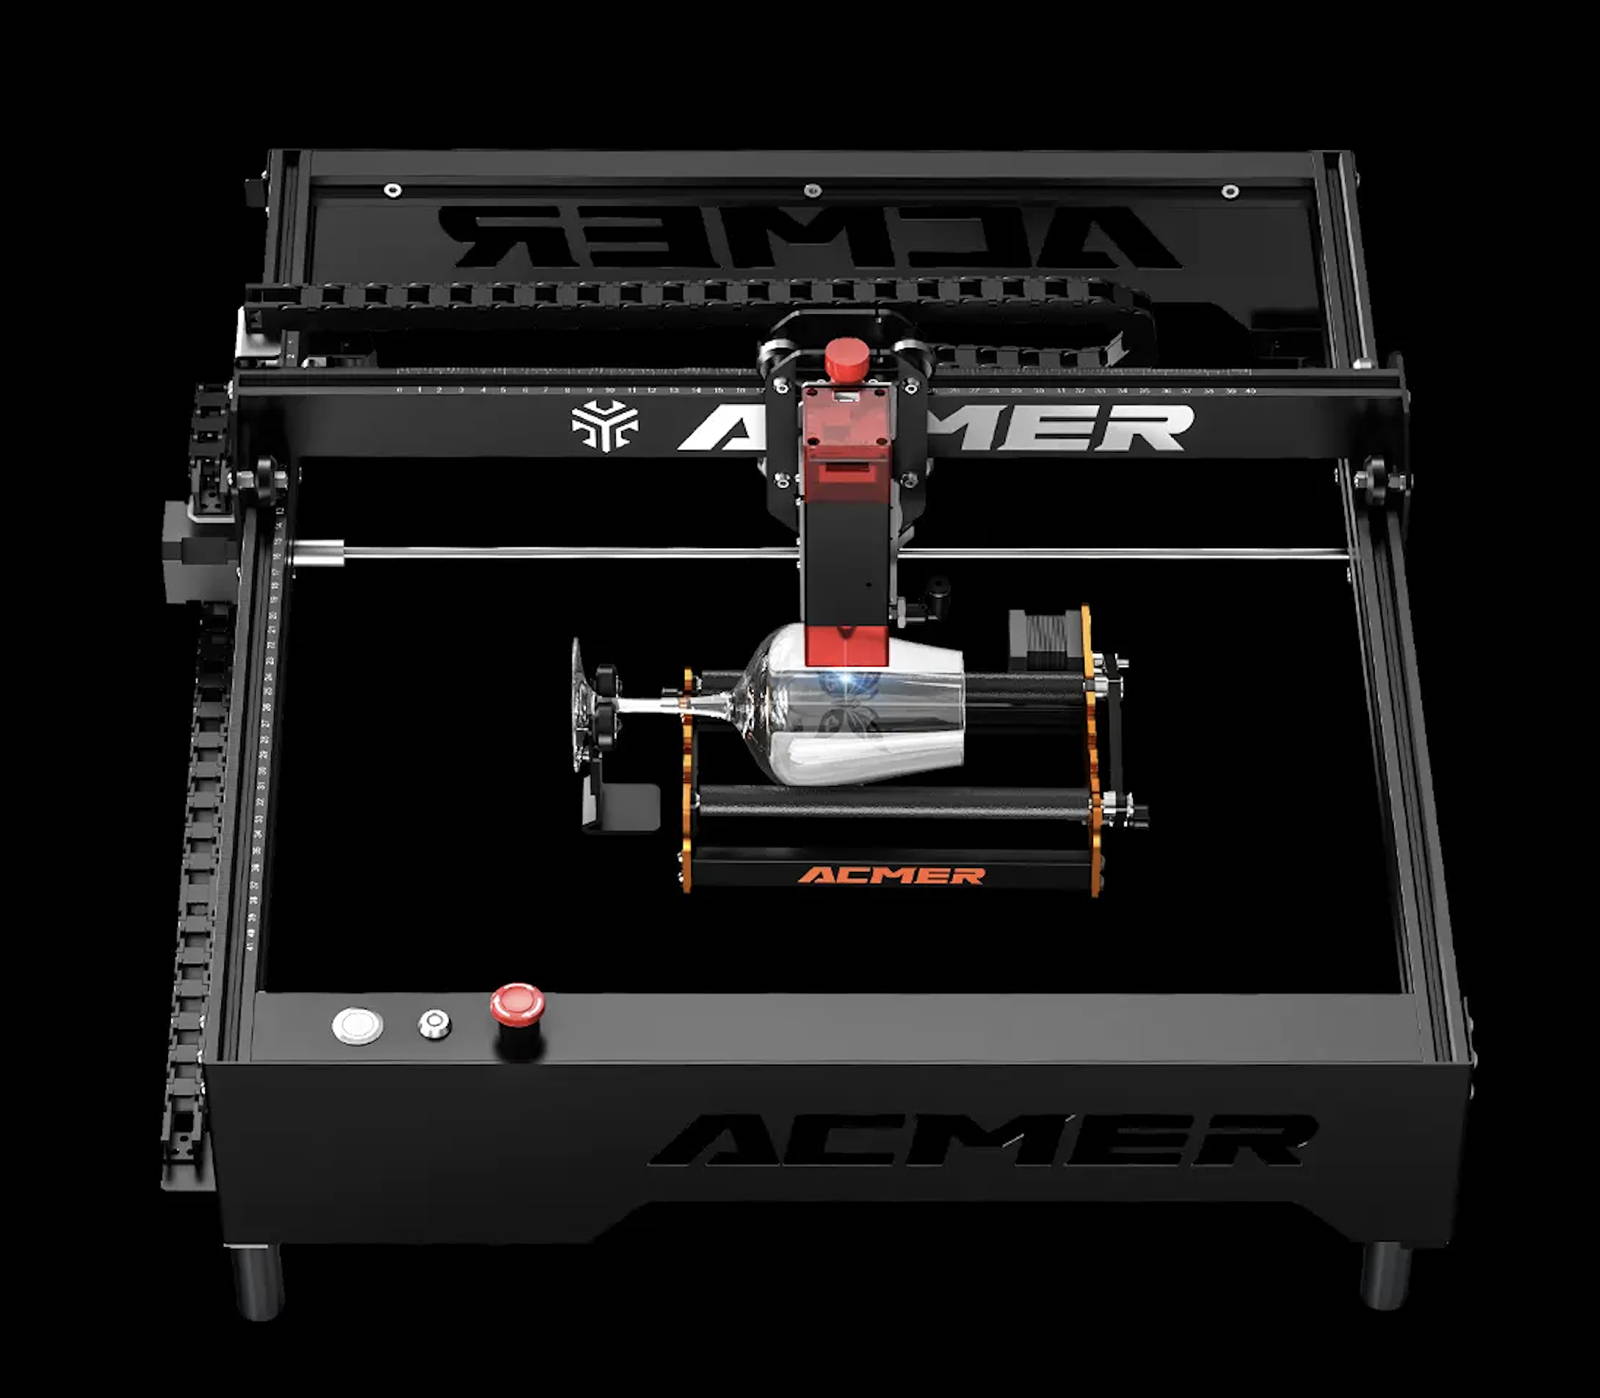 Machine Decoupe Graveur Laser-ACMER P1 10w